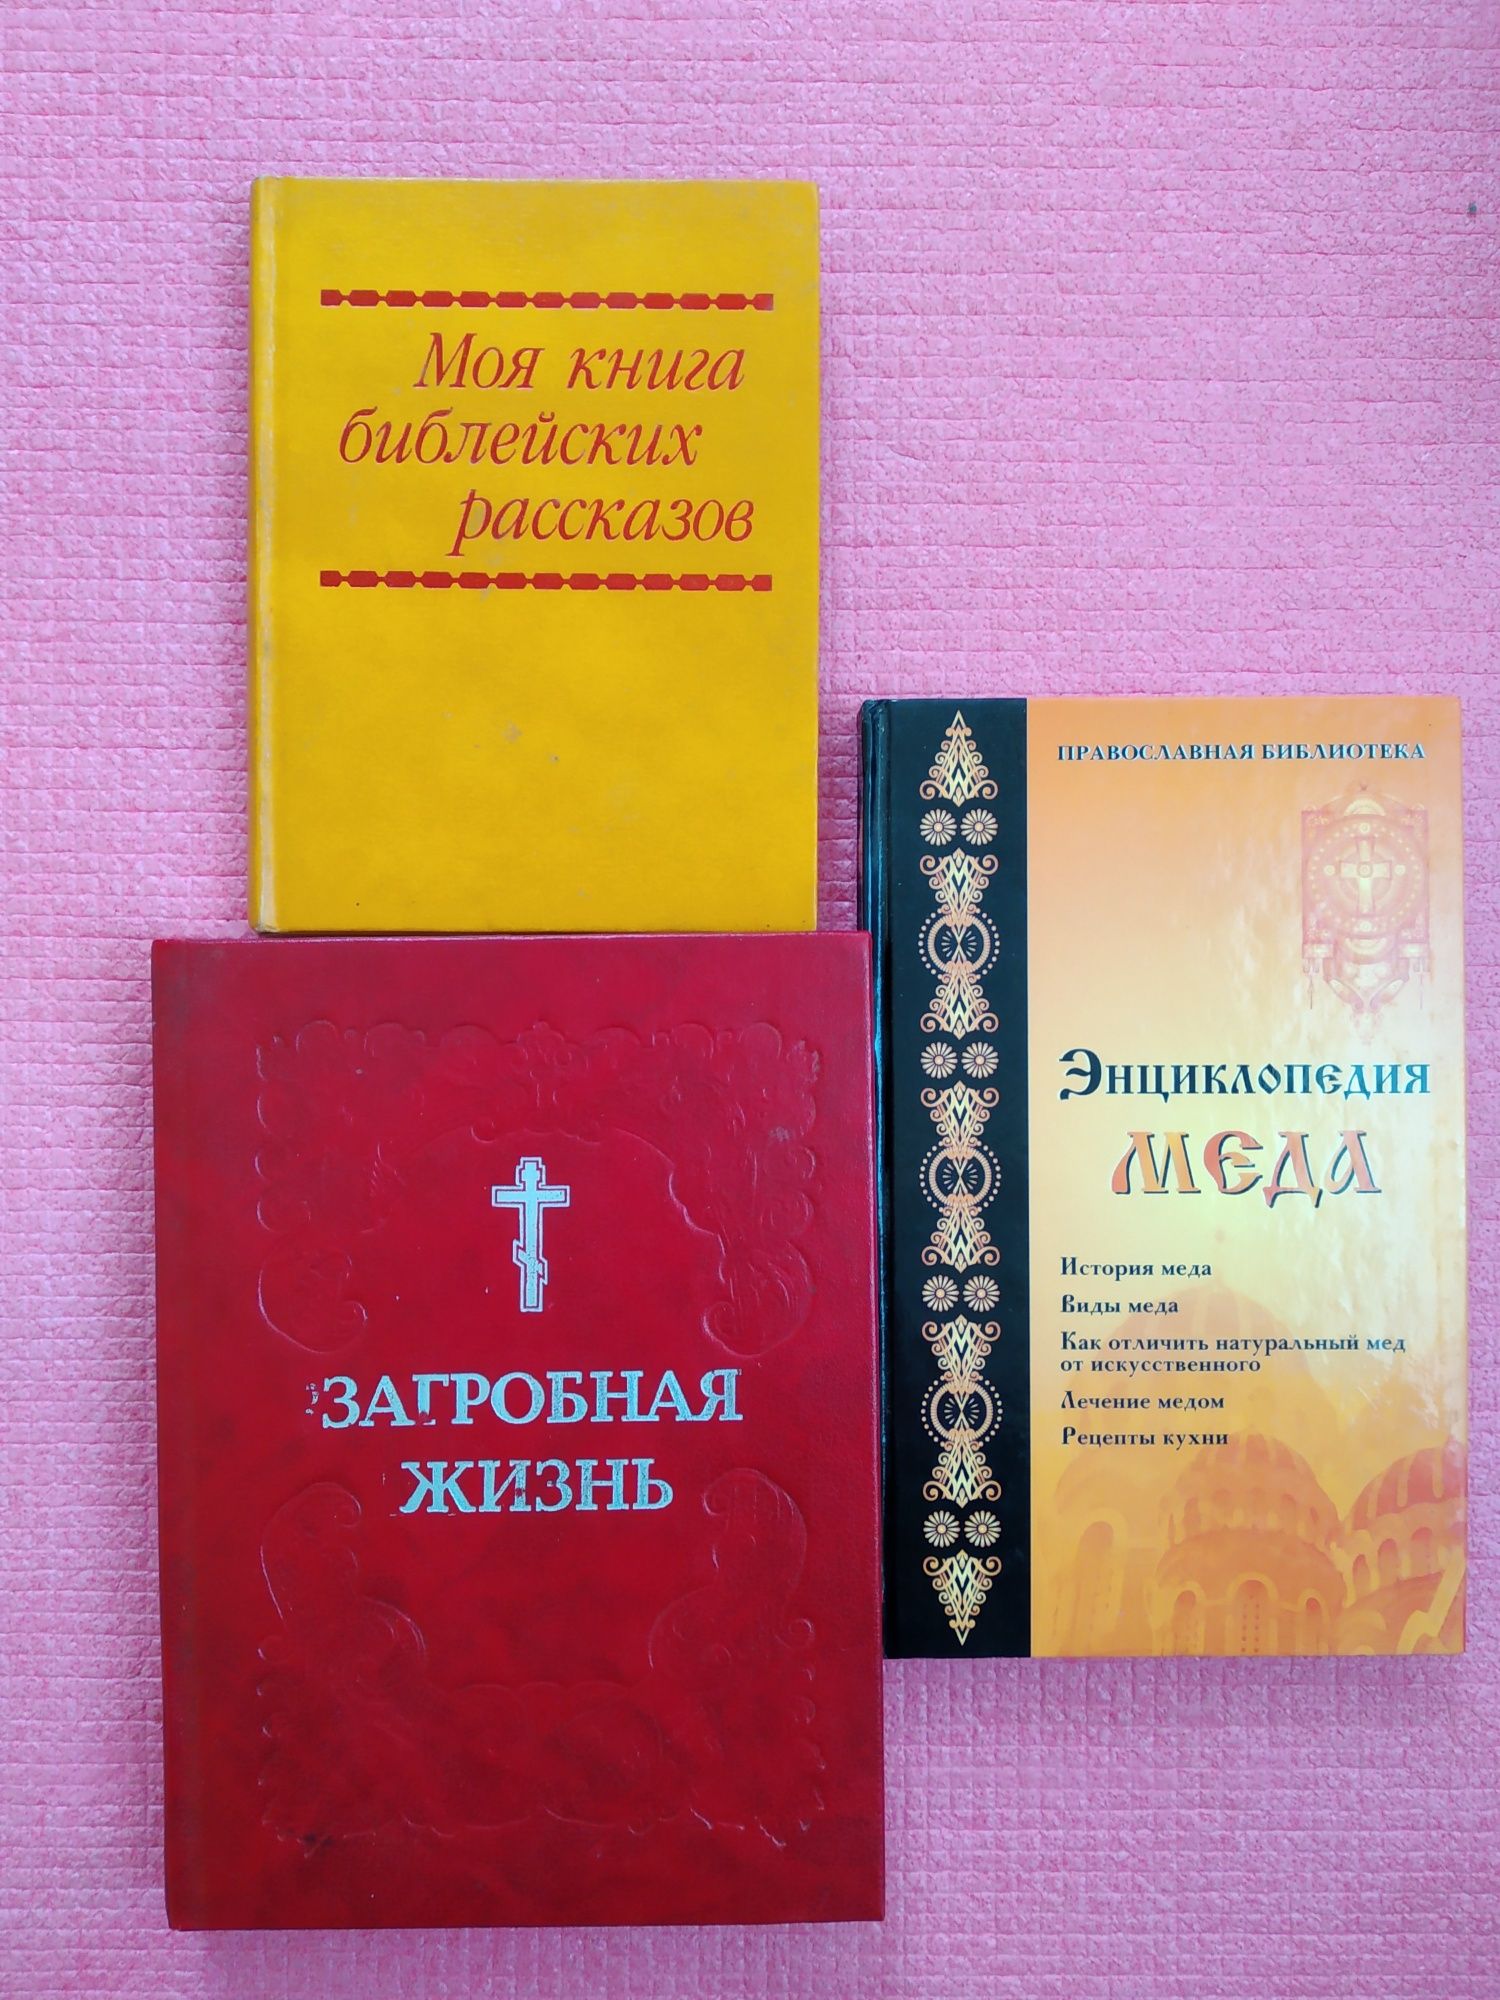 Книги Лазарев, Малахов, религия, кулинария, шитьё и др.